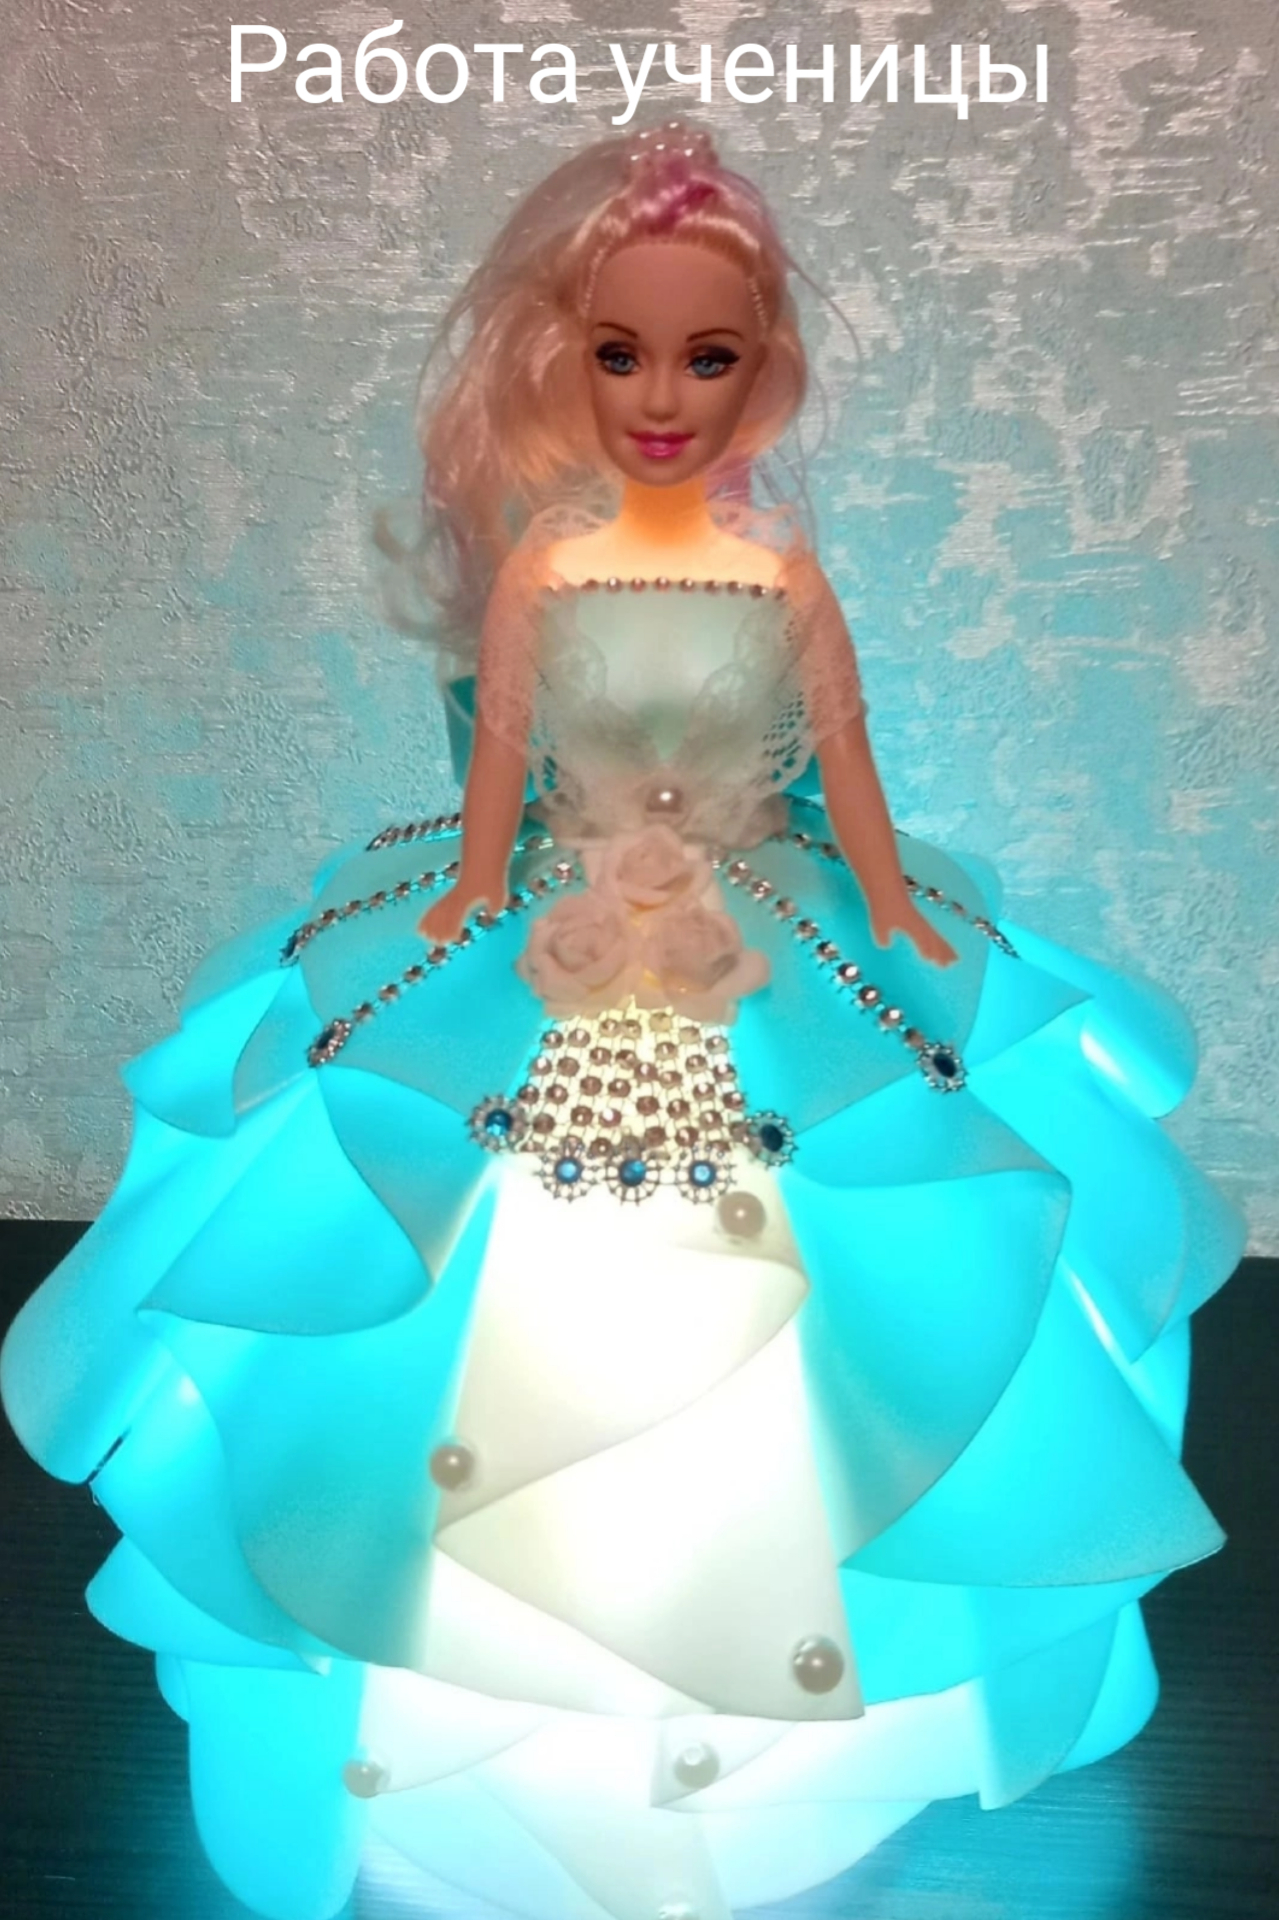 Платье конструктор для куклы Барби из старой тюли - YouTube | Novelty lamp, Novelty, Decor